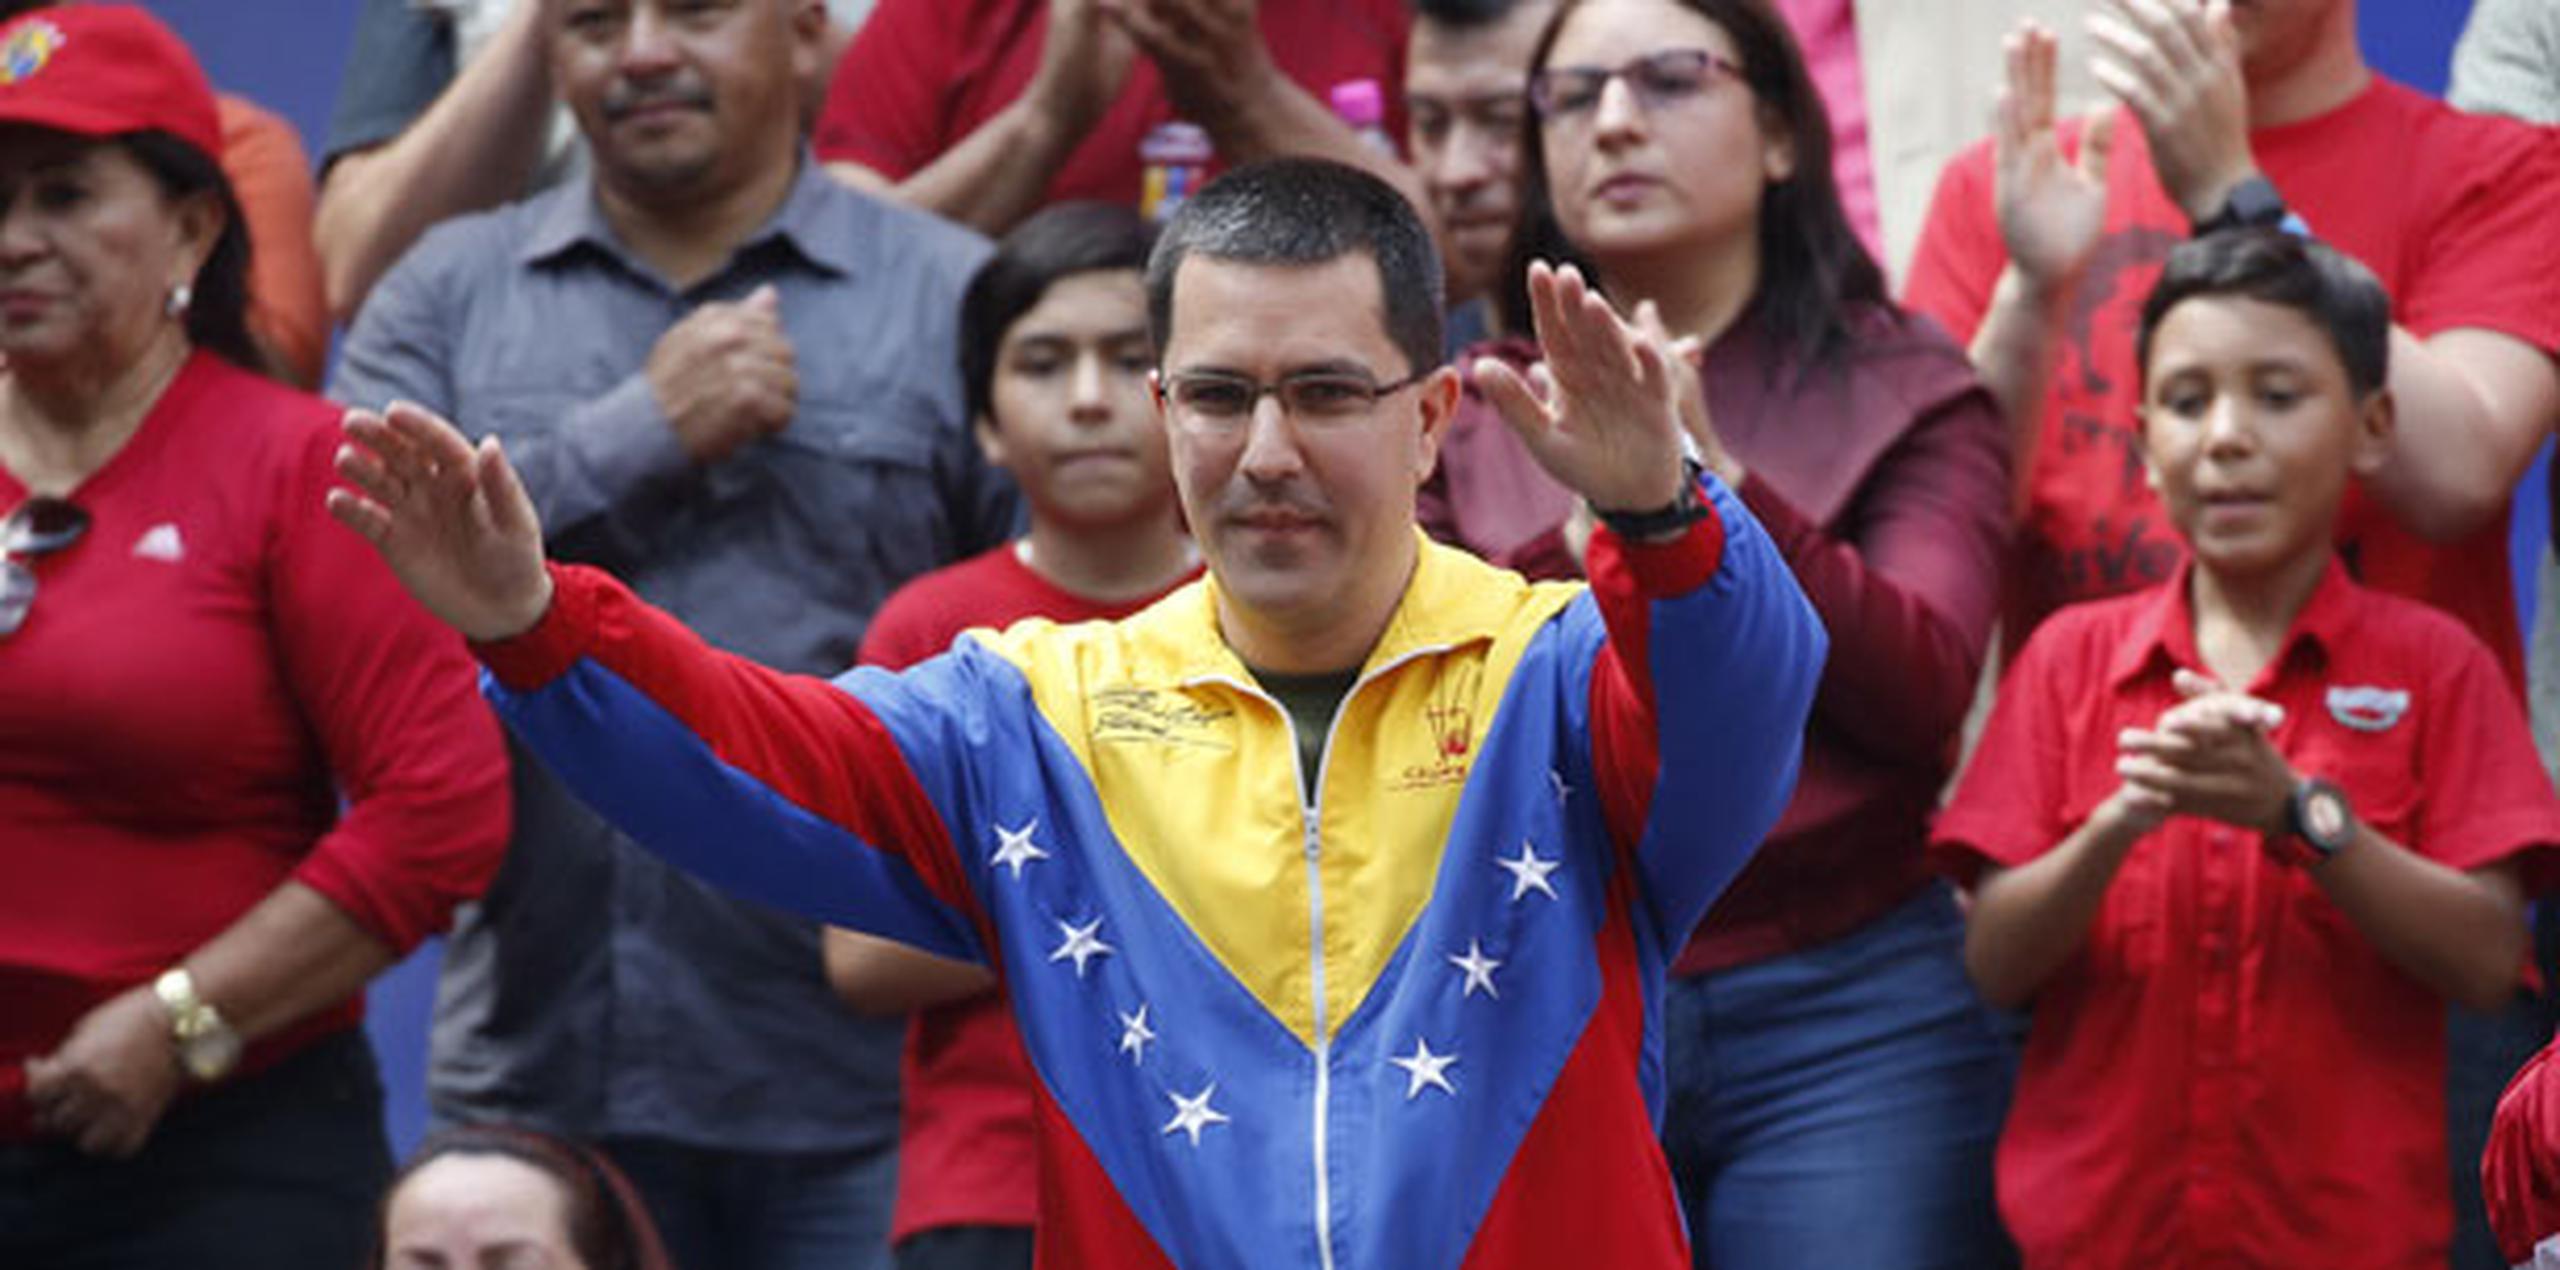 Arreaza es una figura prominente del gobierno de Maduro que ha representado a Venezuela en Naciones Unidas en medio de la profunda crisis política y económica del país sudamericano. (AP)